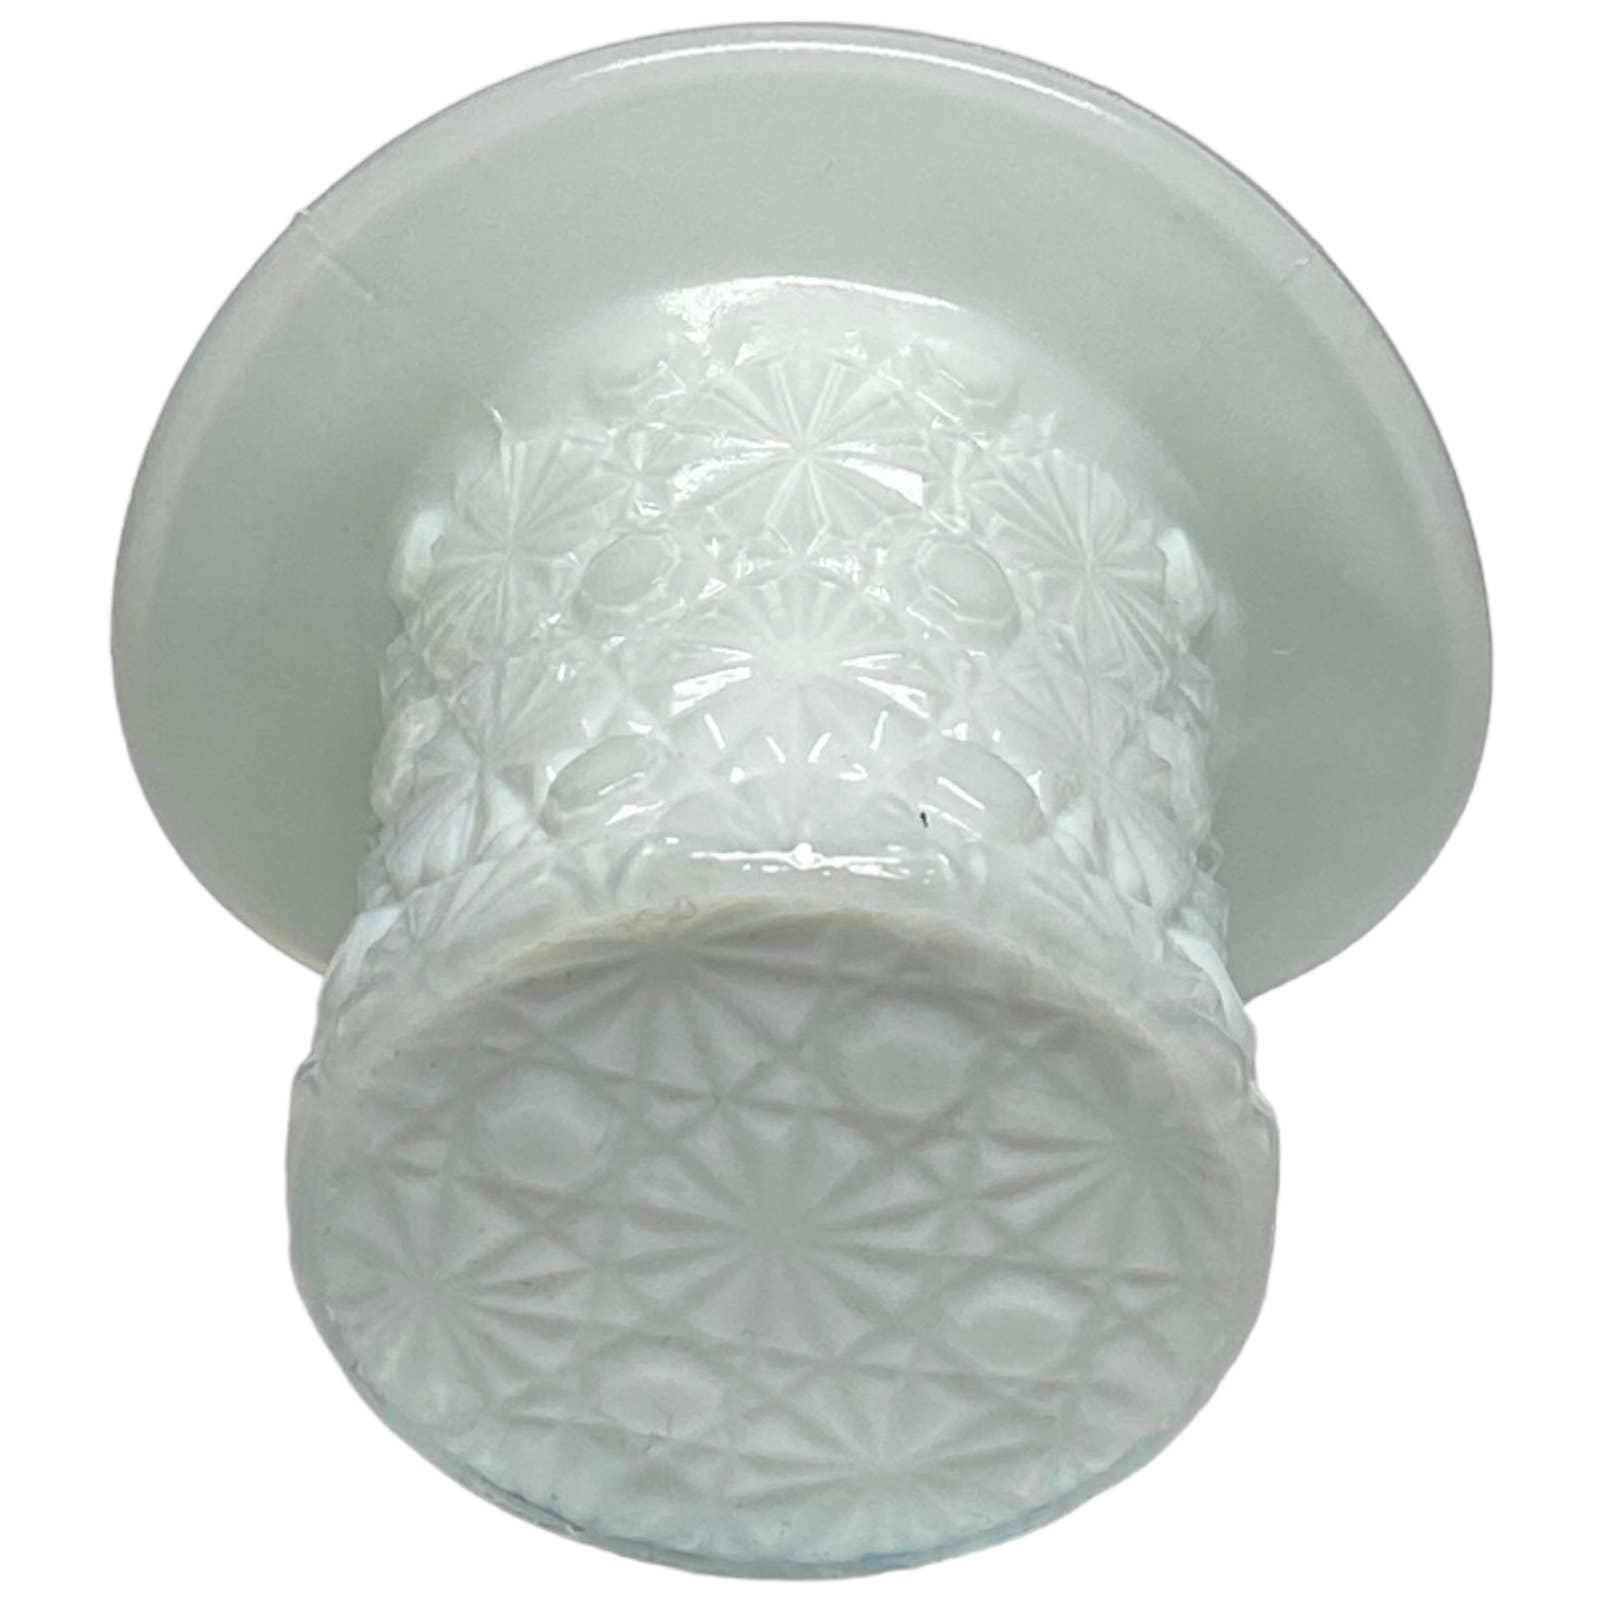 Boyd Art Glass Daisy Button Hat Toothpick Trinket Holder 1999 Millennium White